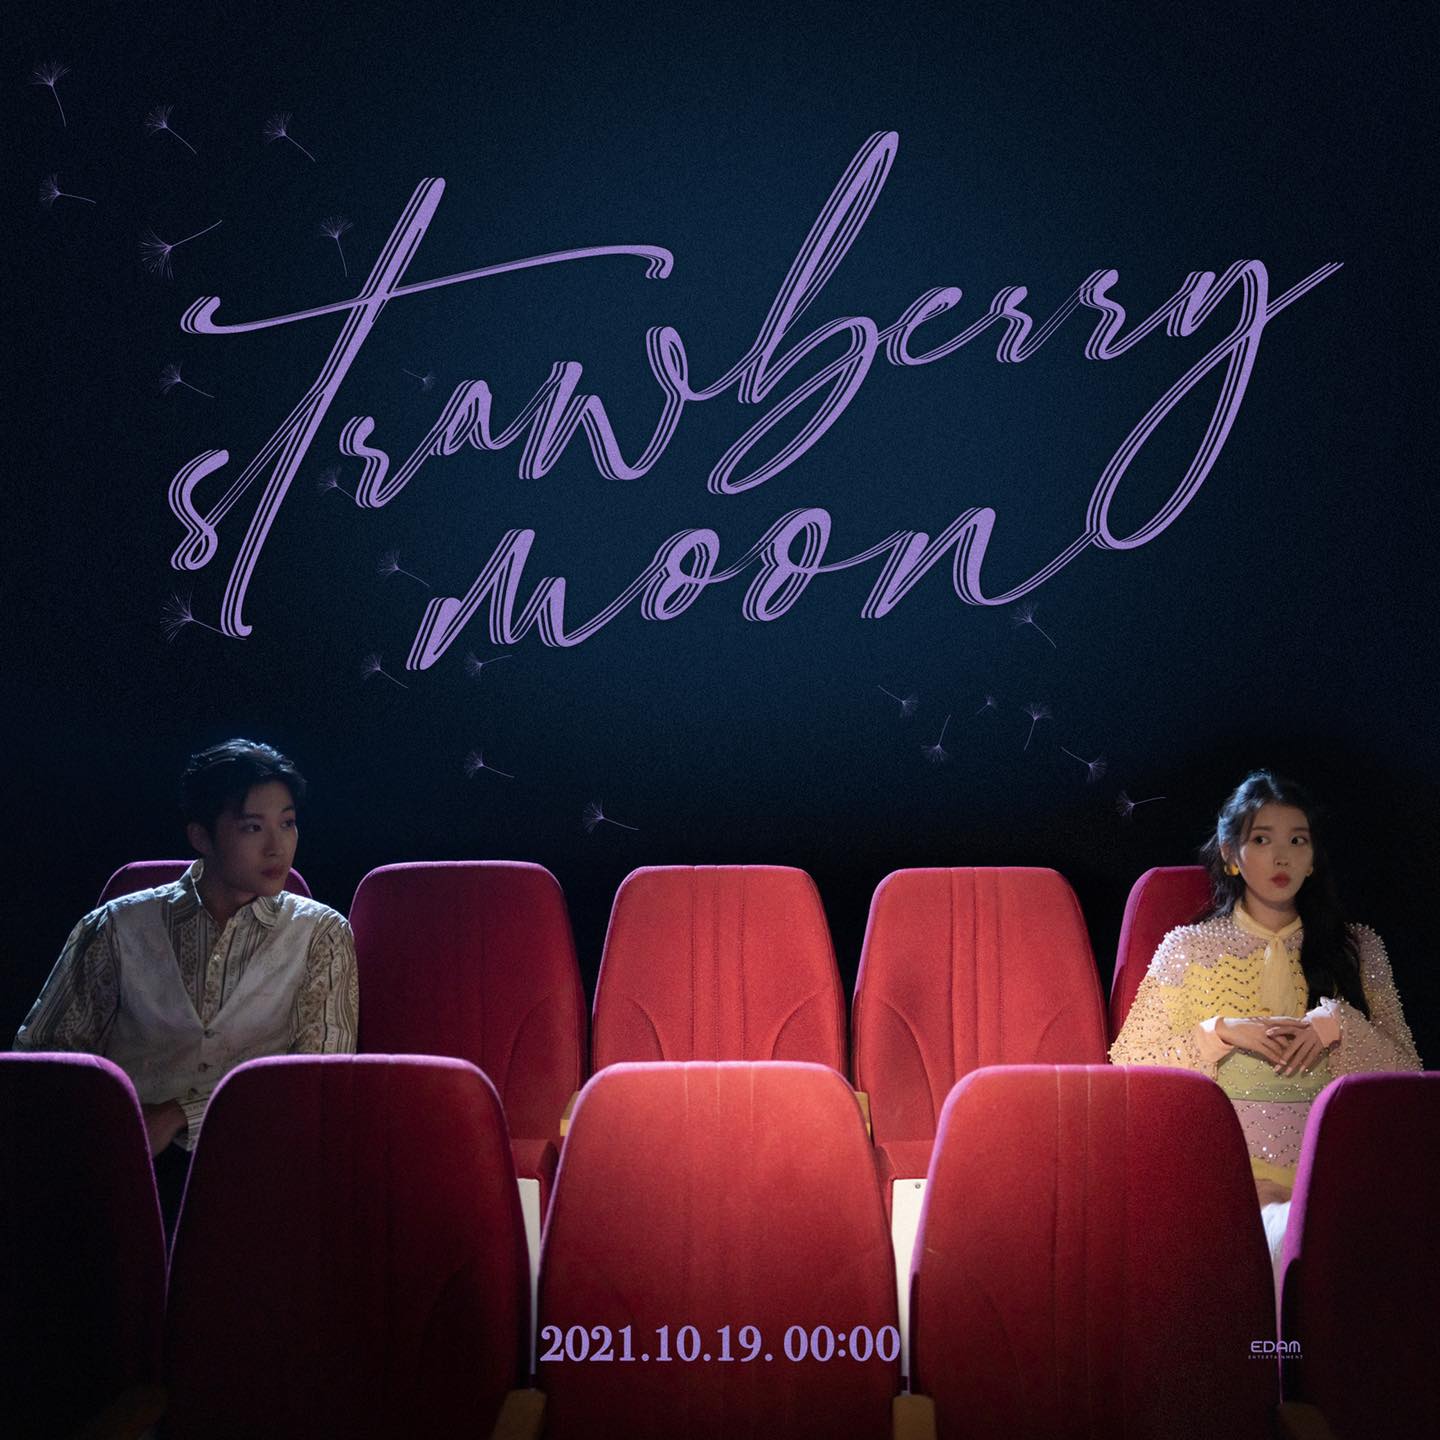 MV single 'Strawberry Moon' của IU với sự tham gia của nam diễn viên họ Lee sẽ được phát hành vào ngày 19/10 lúc 24:00.